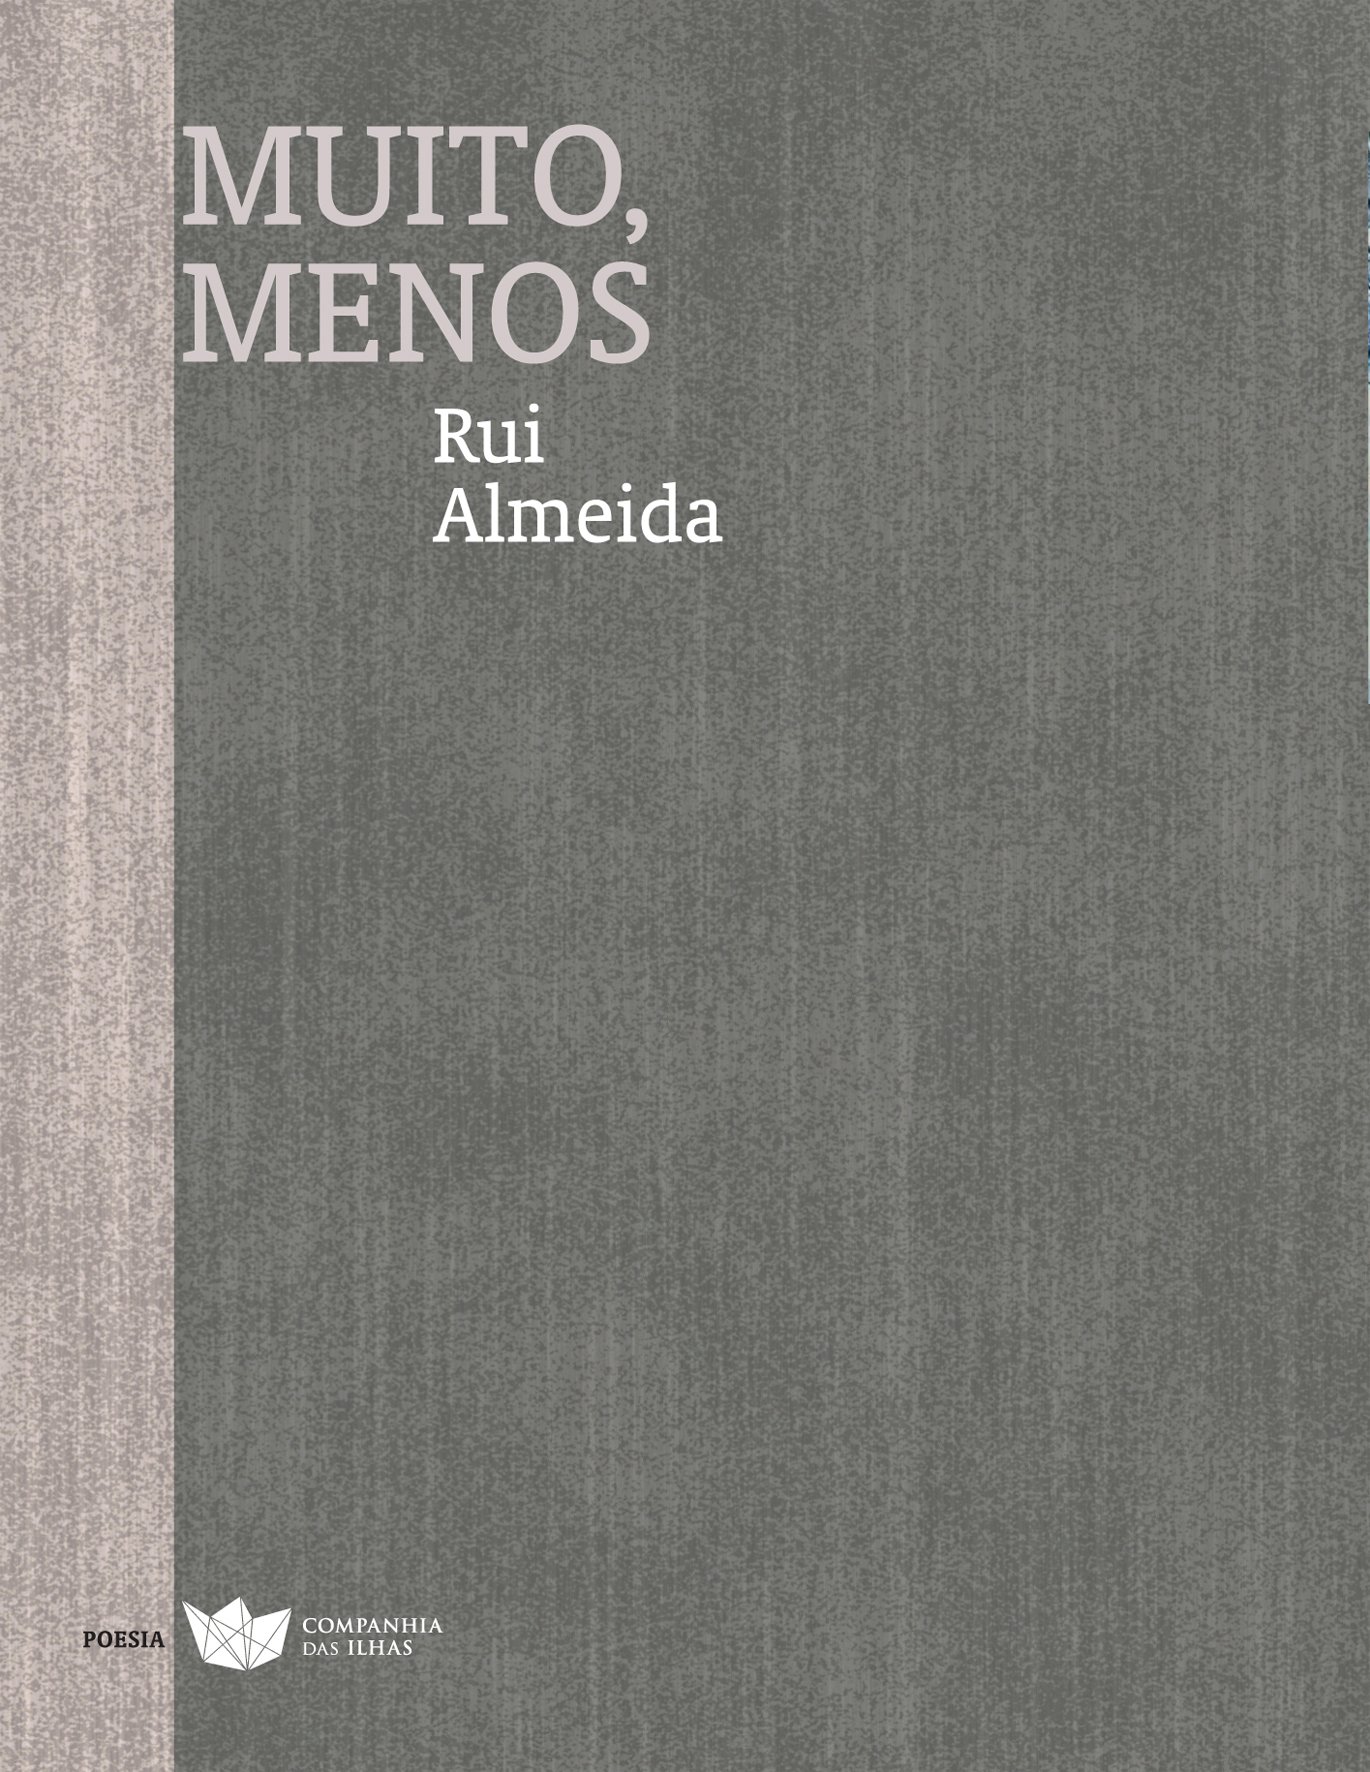 Este Ã© o quinto livro de poesia Rui Almeida, nascido em 1972